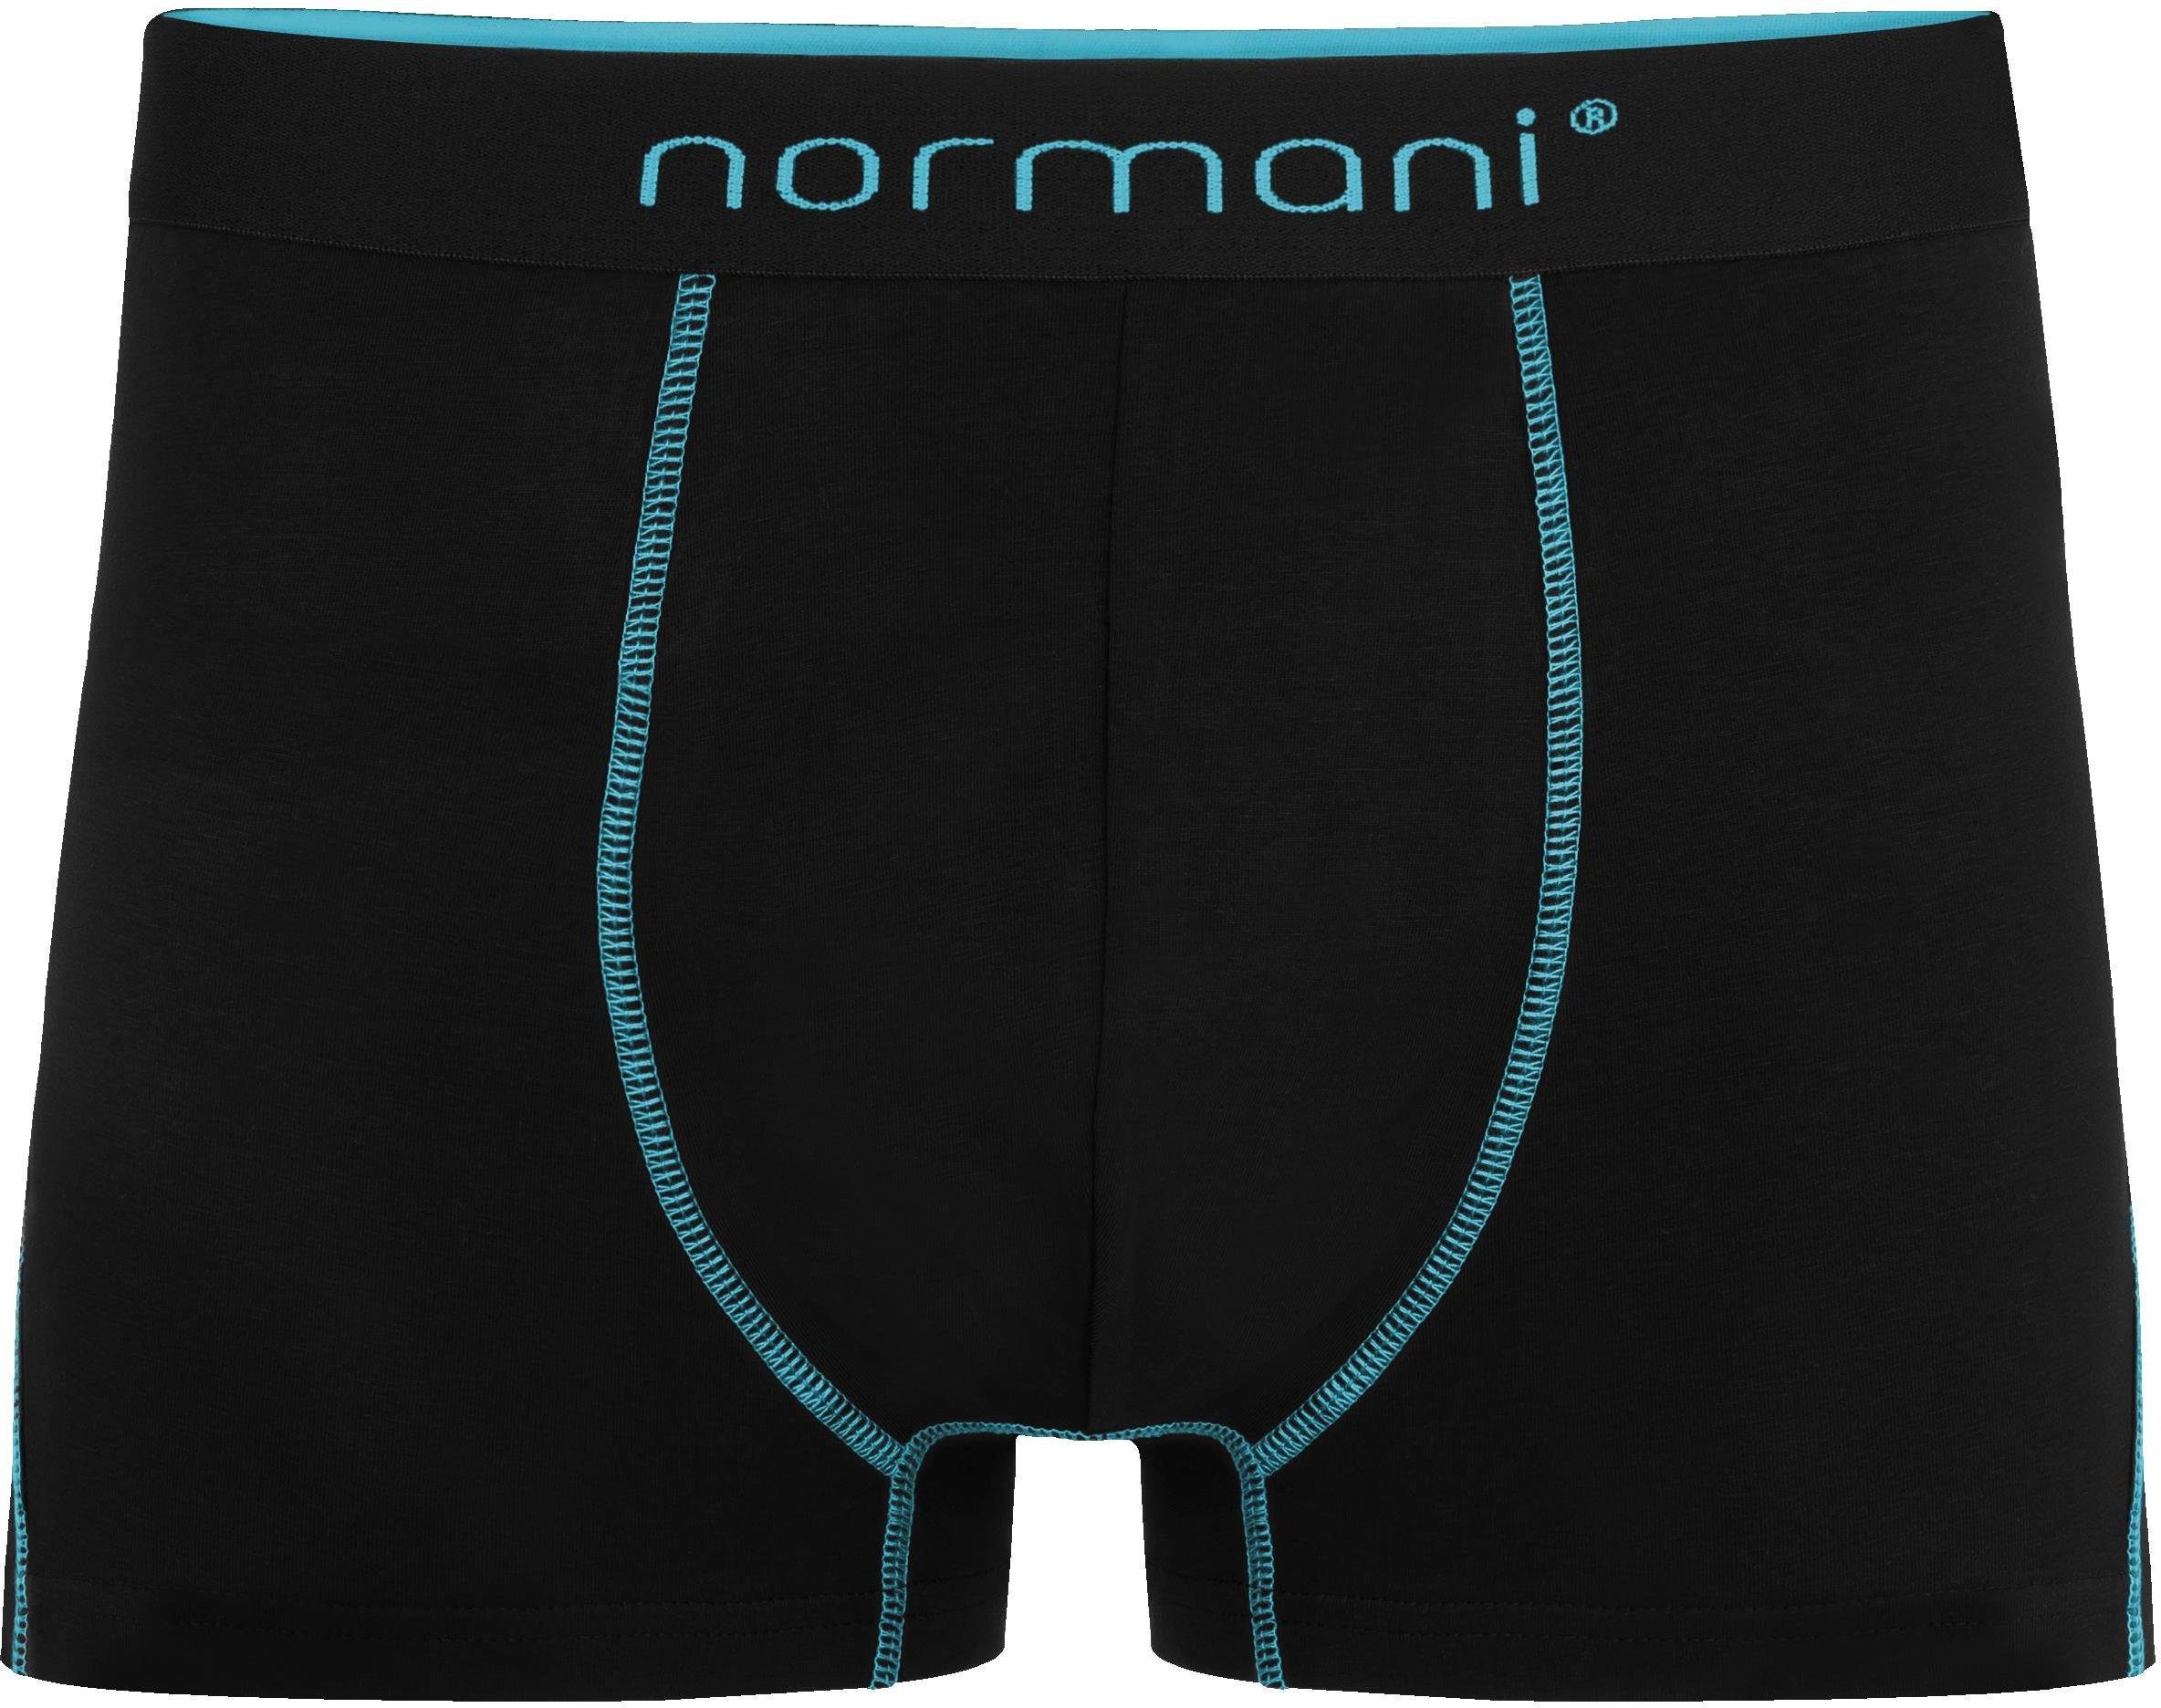 normani Boxershorts 6 Herren Männer Dunkelblau/Hellblau/Türkis aus atmungsaktiver Baumwoll-Boxershorts für Baumwolle Unterhose